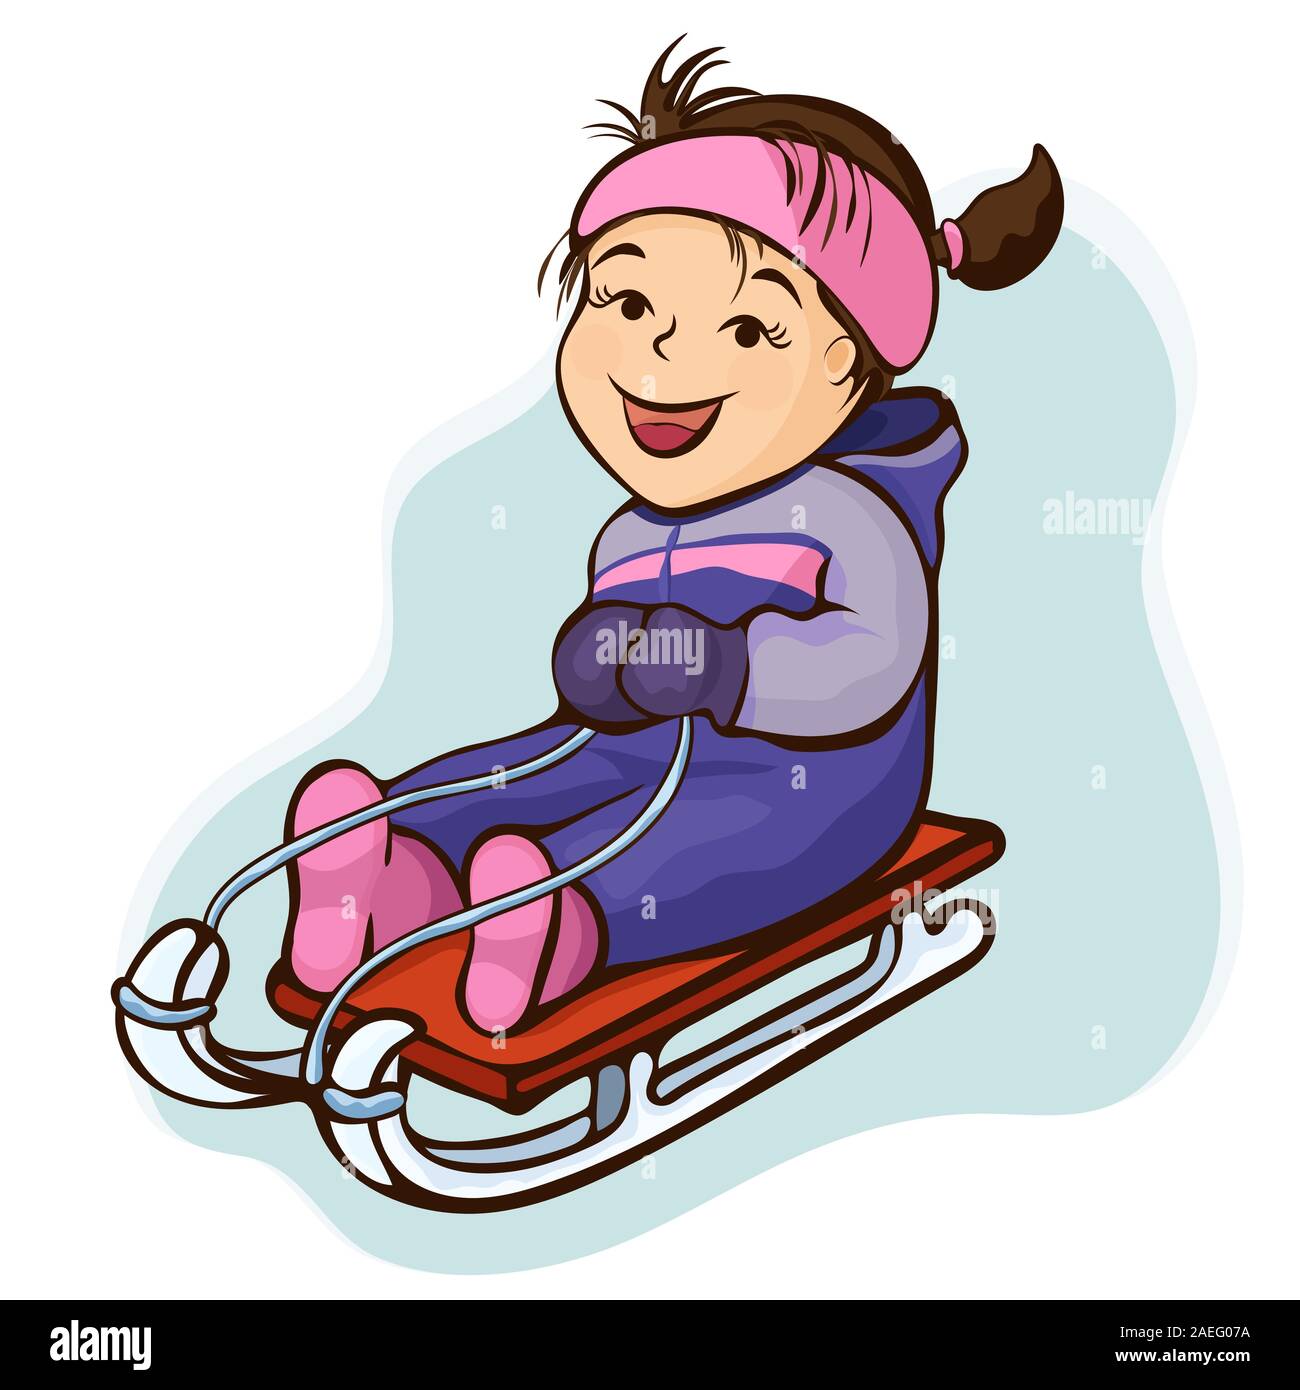 Girl sledding, personnage, contour dessin à la main, hiver kids fun. Heureux l'enfant mignon en violet-lilas robe, promenades en traîneau sur joyeux dans la neige, je Illustration de Vecteur